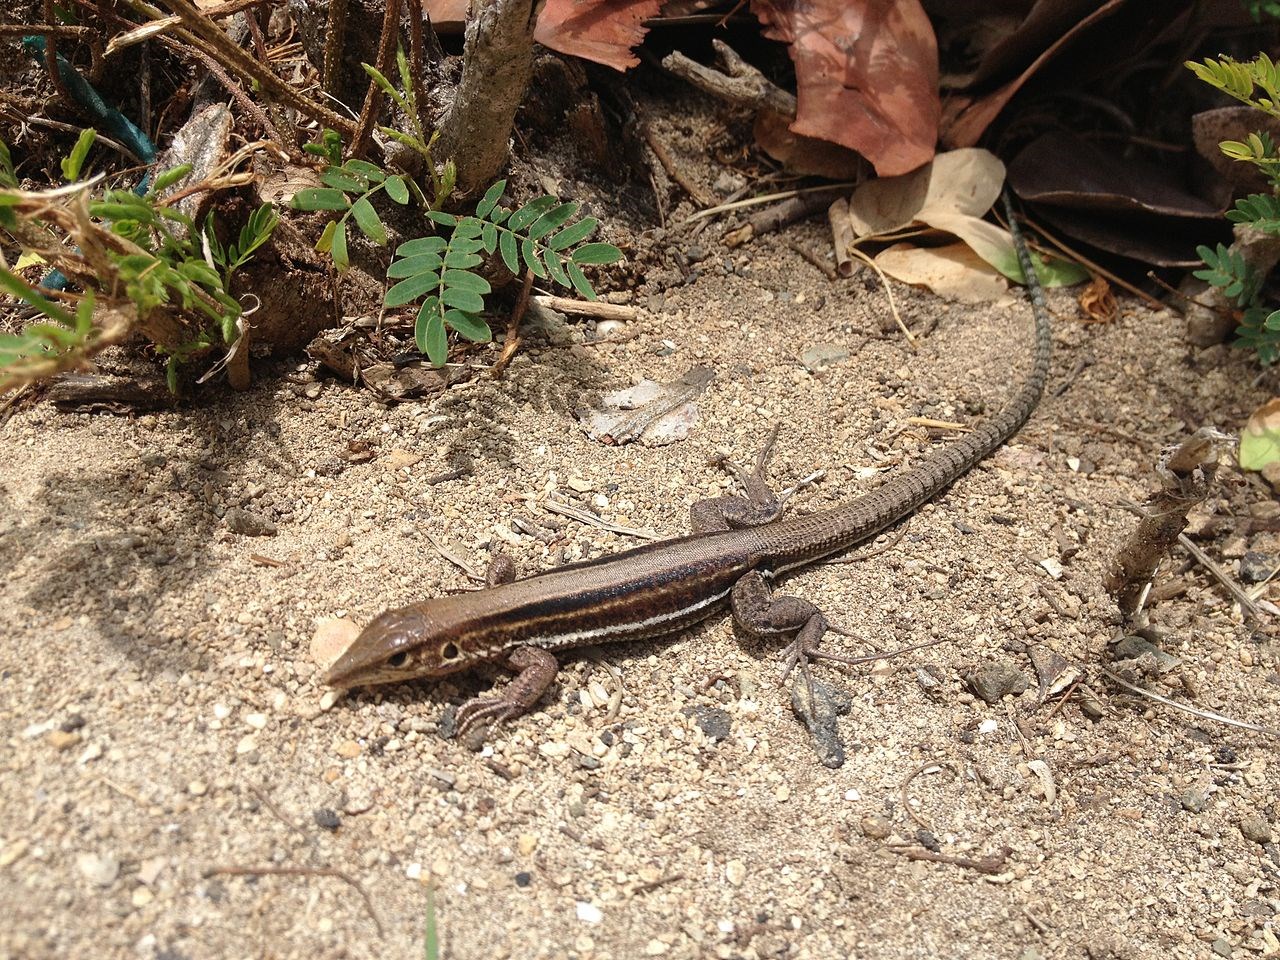 St. Croix ground lizard